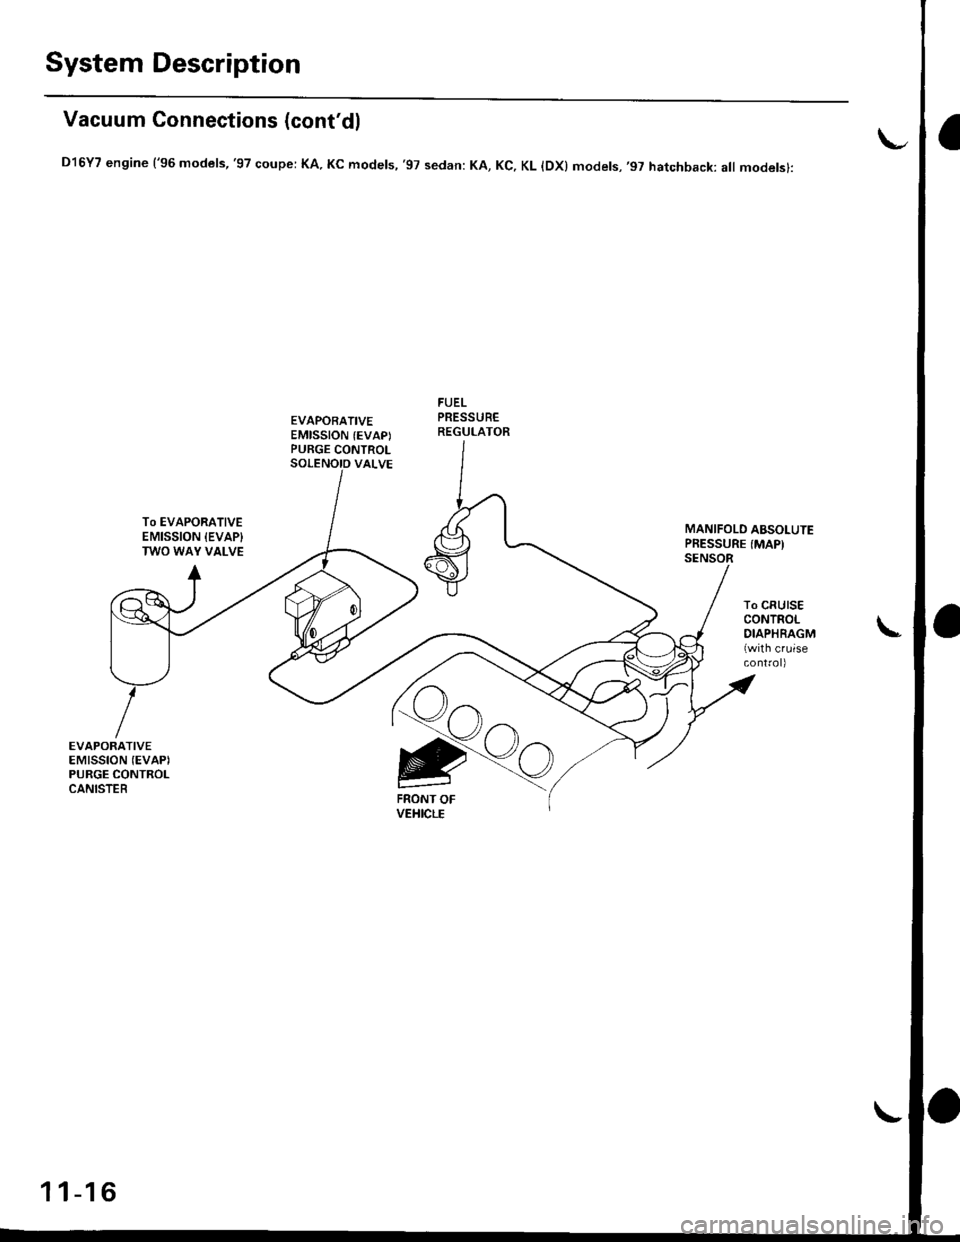 HONDA CIVIC 1996 6.G Workshop Manual System Description
Vacuum Connections (contdl
D16Y7 engine (96 models,97 coupe: KA. Kc models, 97 sedan: KA, Kc, KL lDx) models,97 hatchback: all modelsl:
EVAPORATIVEEMISSION (EVAPIPURGE CONTROL
